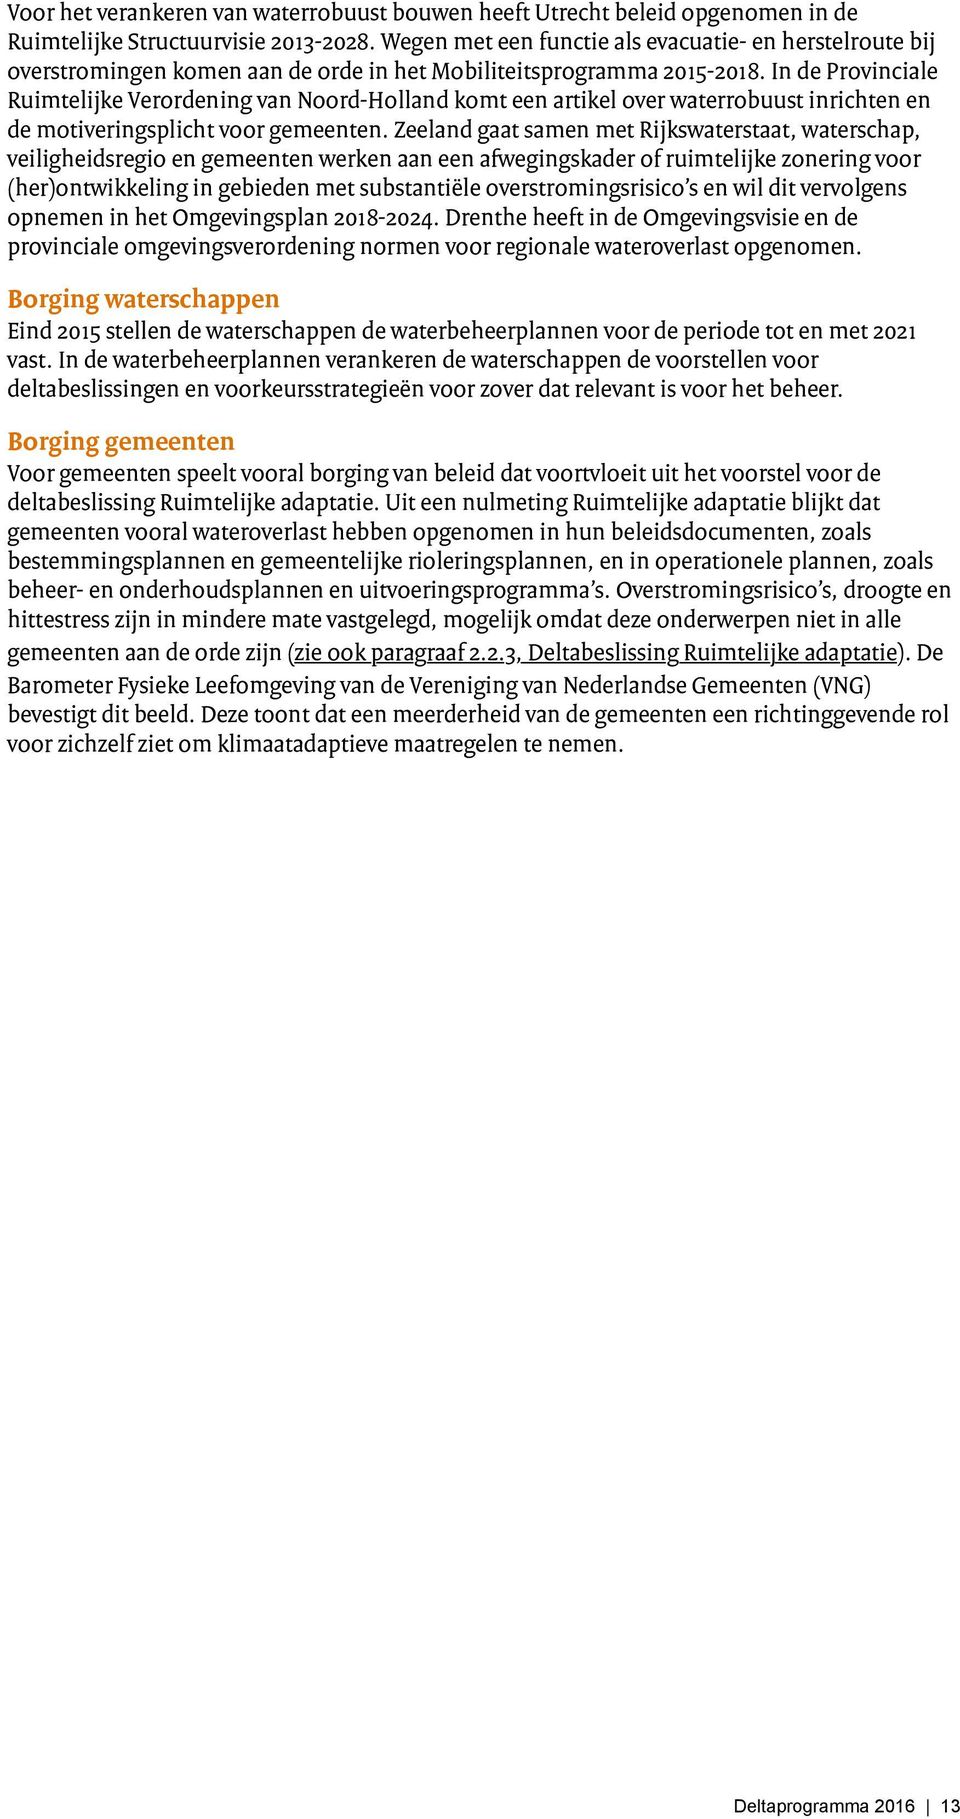 In de Provinciale Ruimtelijke Verordening van Noord-Holland komt een artikel over waterrobuust inrichten en de motiveringsplicht voor gemeenten.